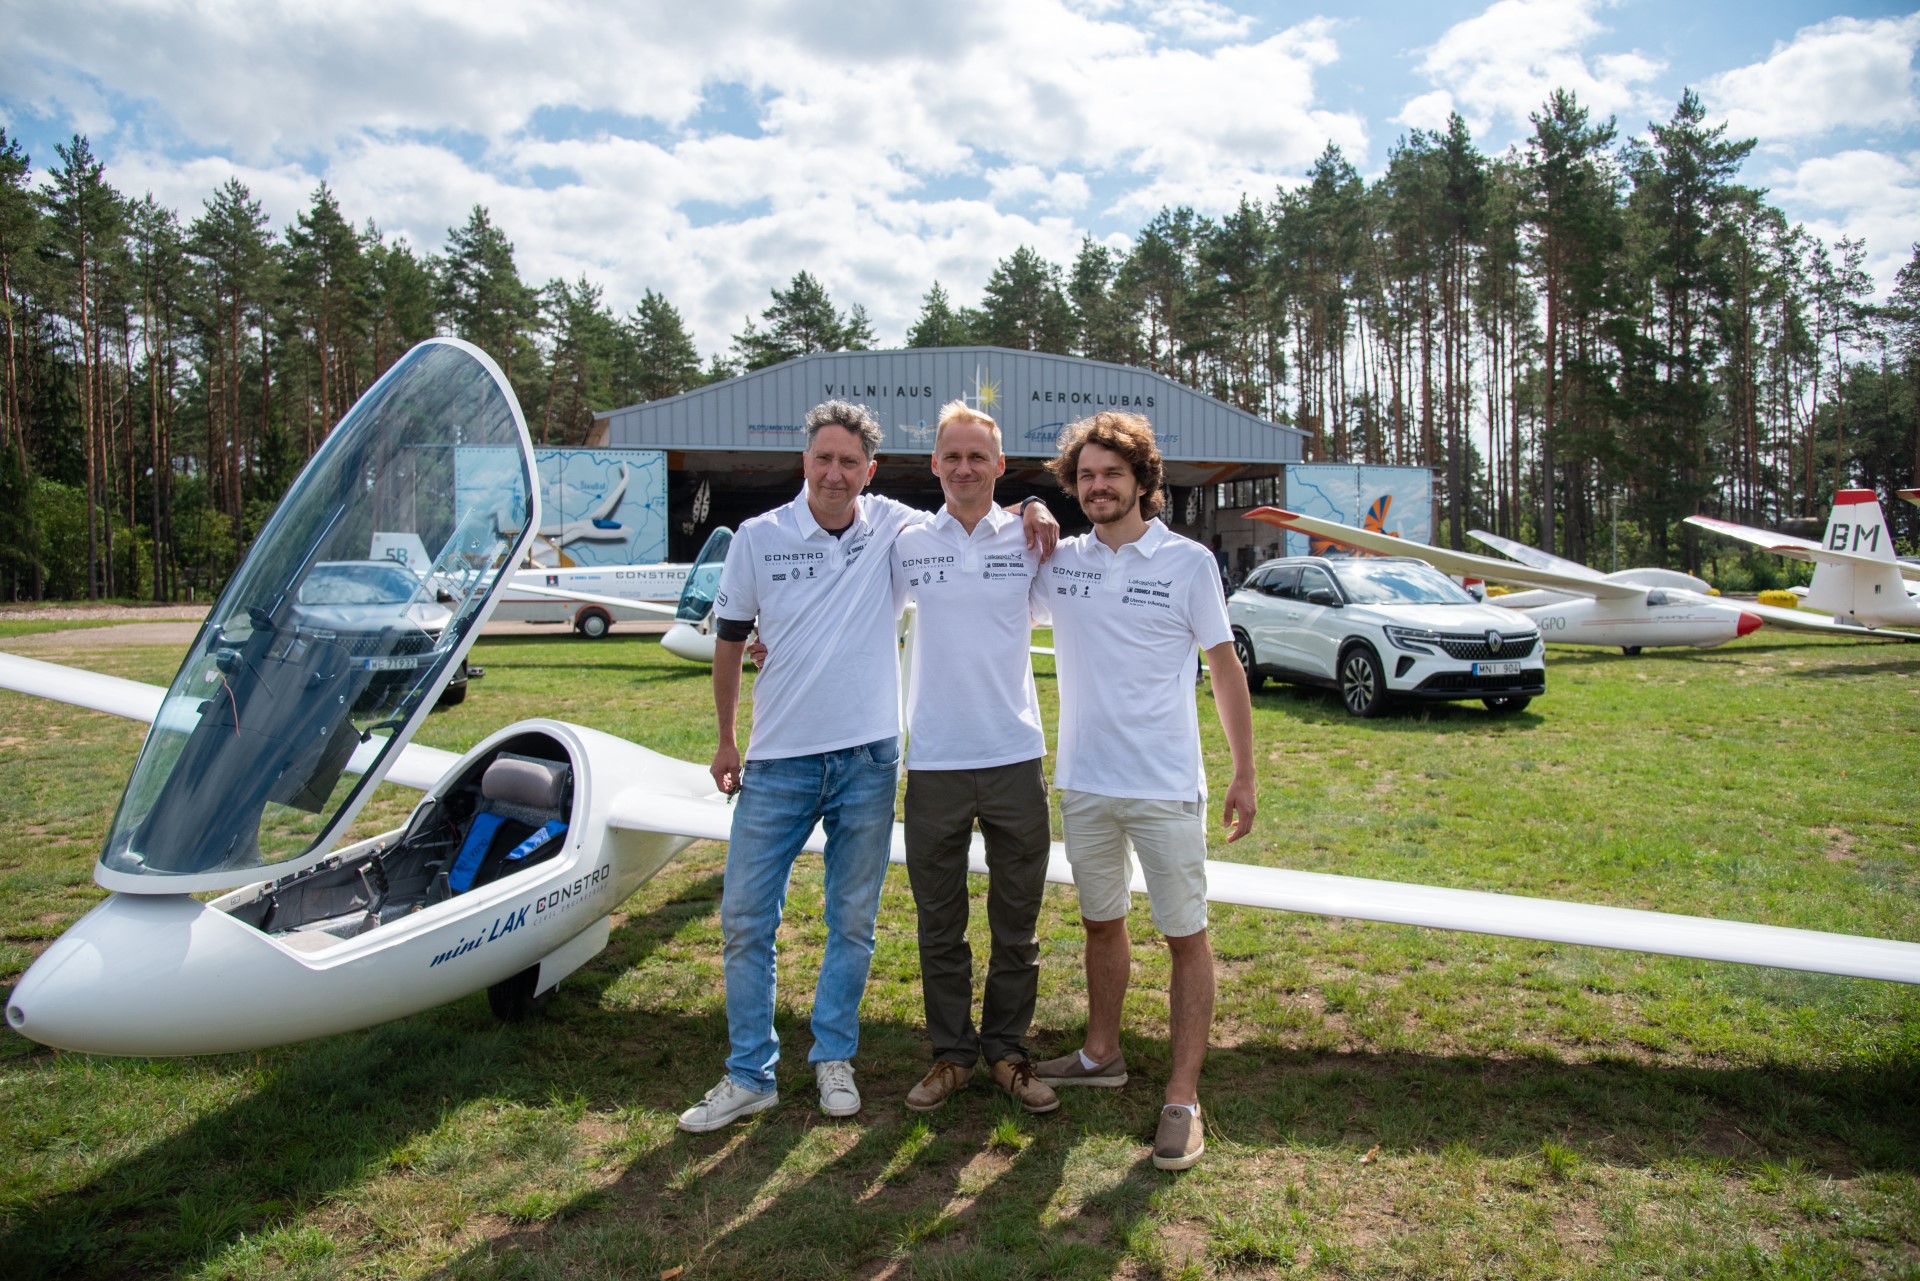 Trzech litewskich pilotów wyruszyło w historyczny lot szybowcem nad Europą